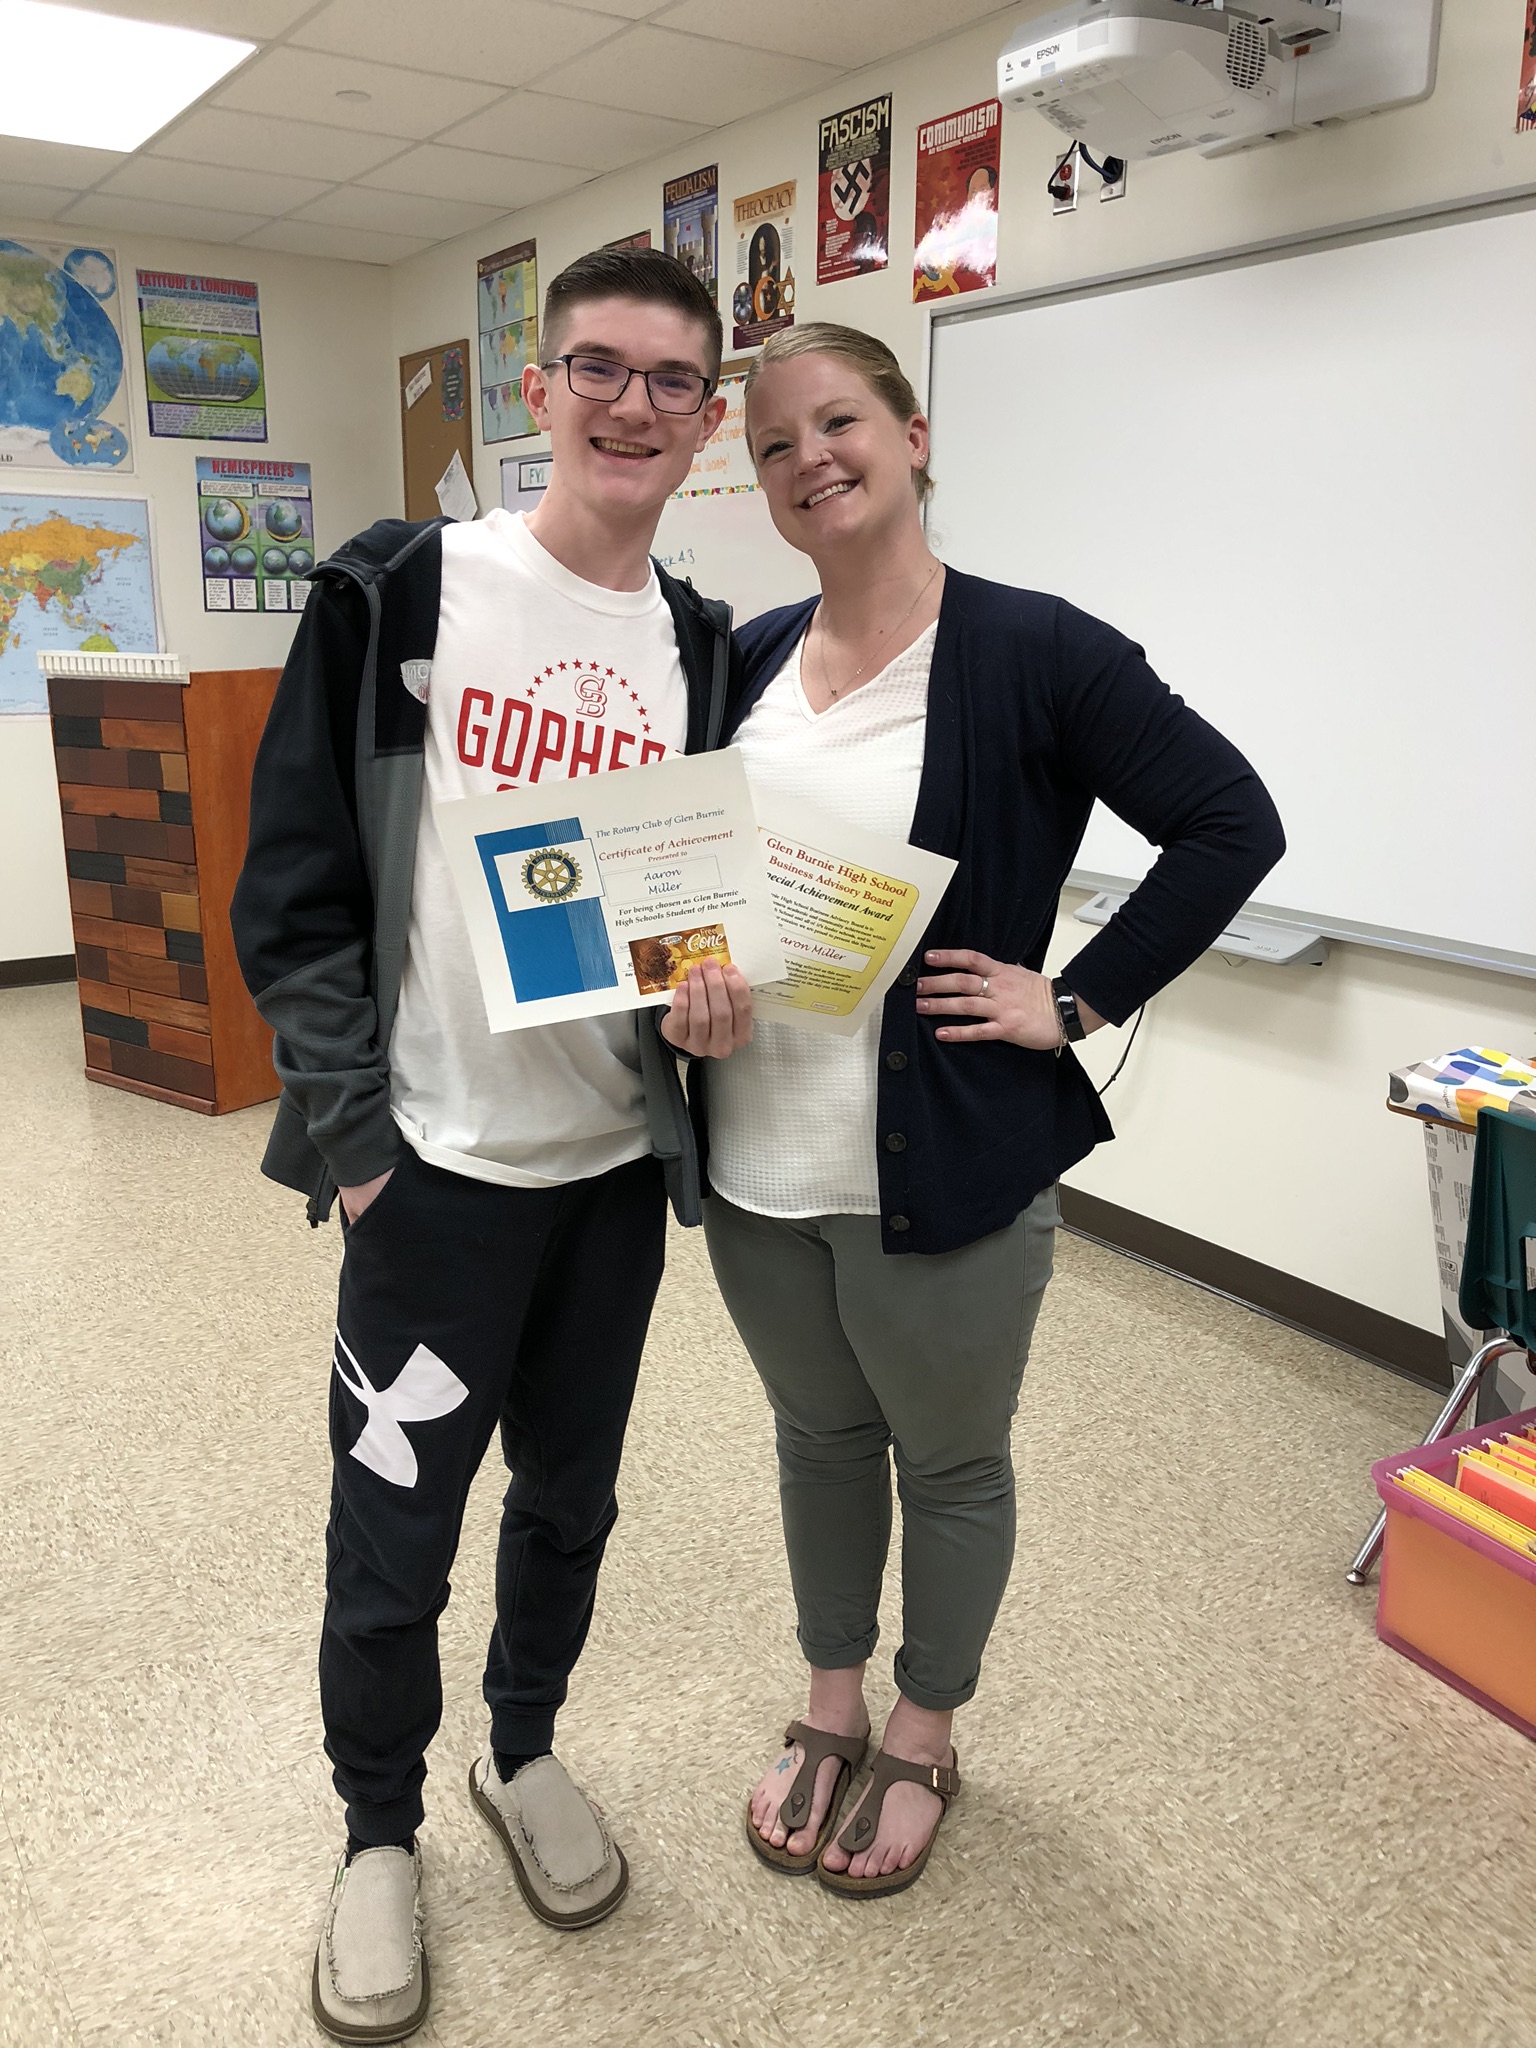 Aaron stands next to his teacher Ms. Burdette